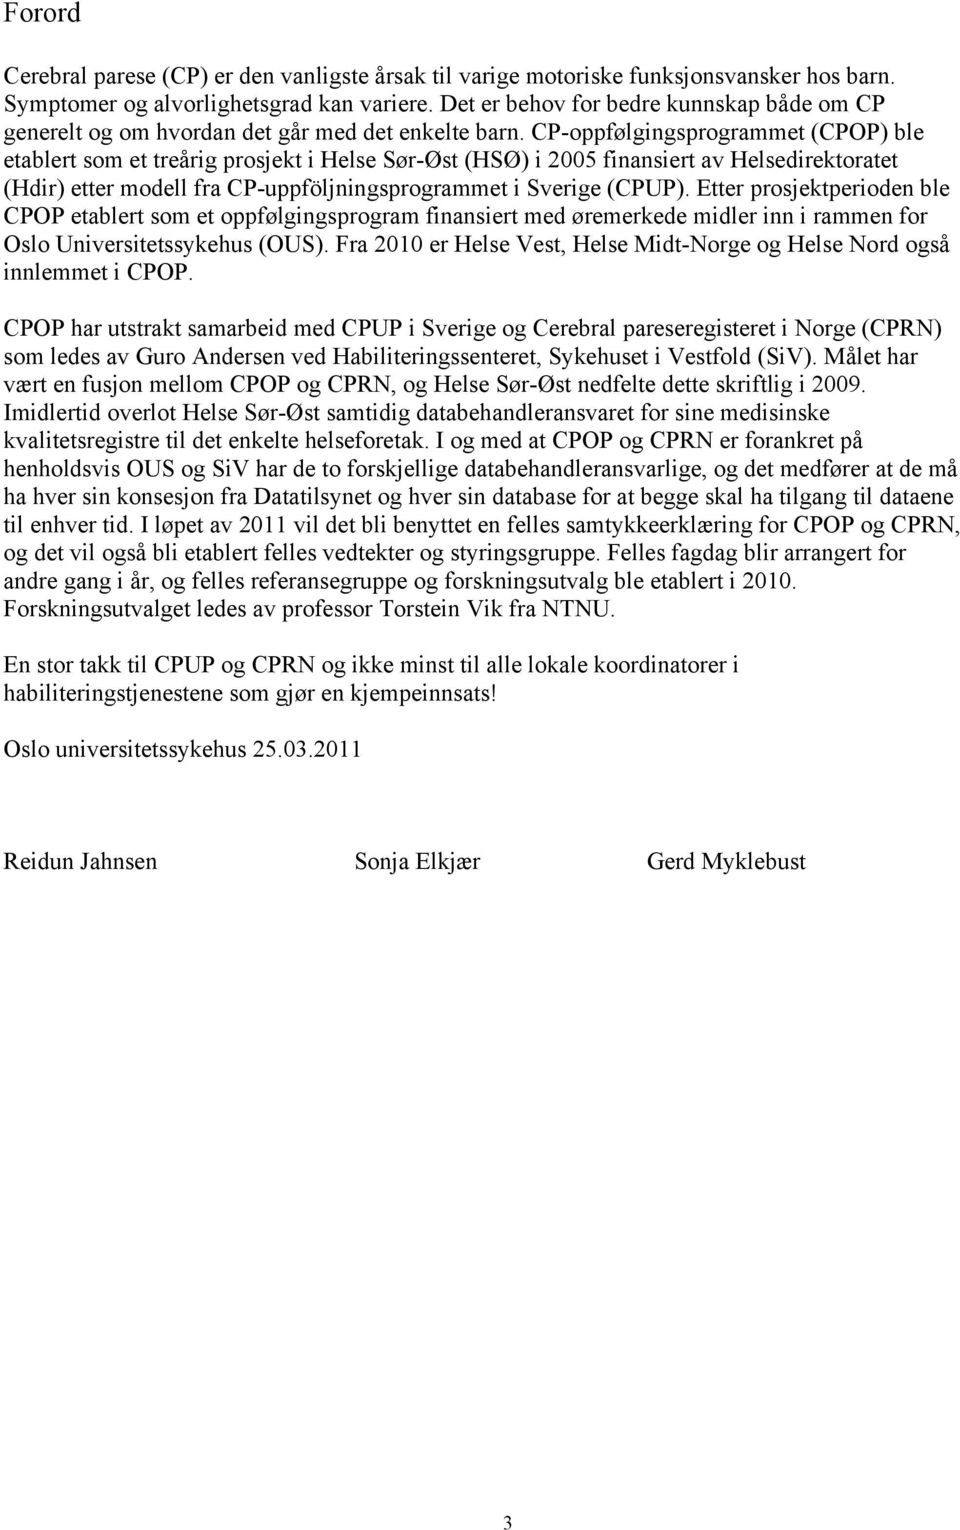 CP-oppfølgingsprogrammet (CPOP) ble etablert som et treårig prosjekt i Helse Sør-Øst (HSØ) i 2005 finansiert av Helsedirektoratet (Hdir) etter modell fra CP-uppföljningsprogrammet i Sverige (CPUP).